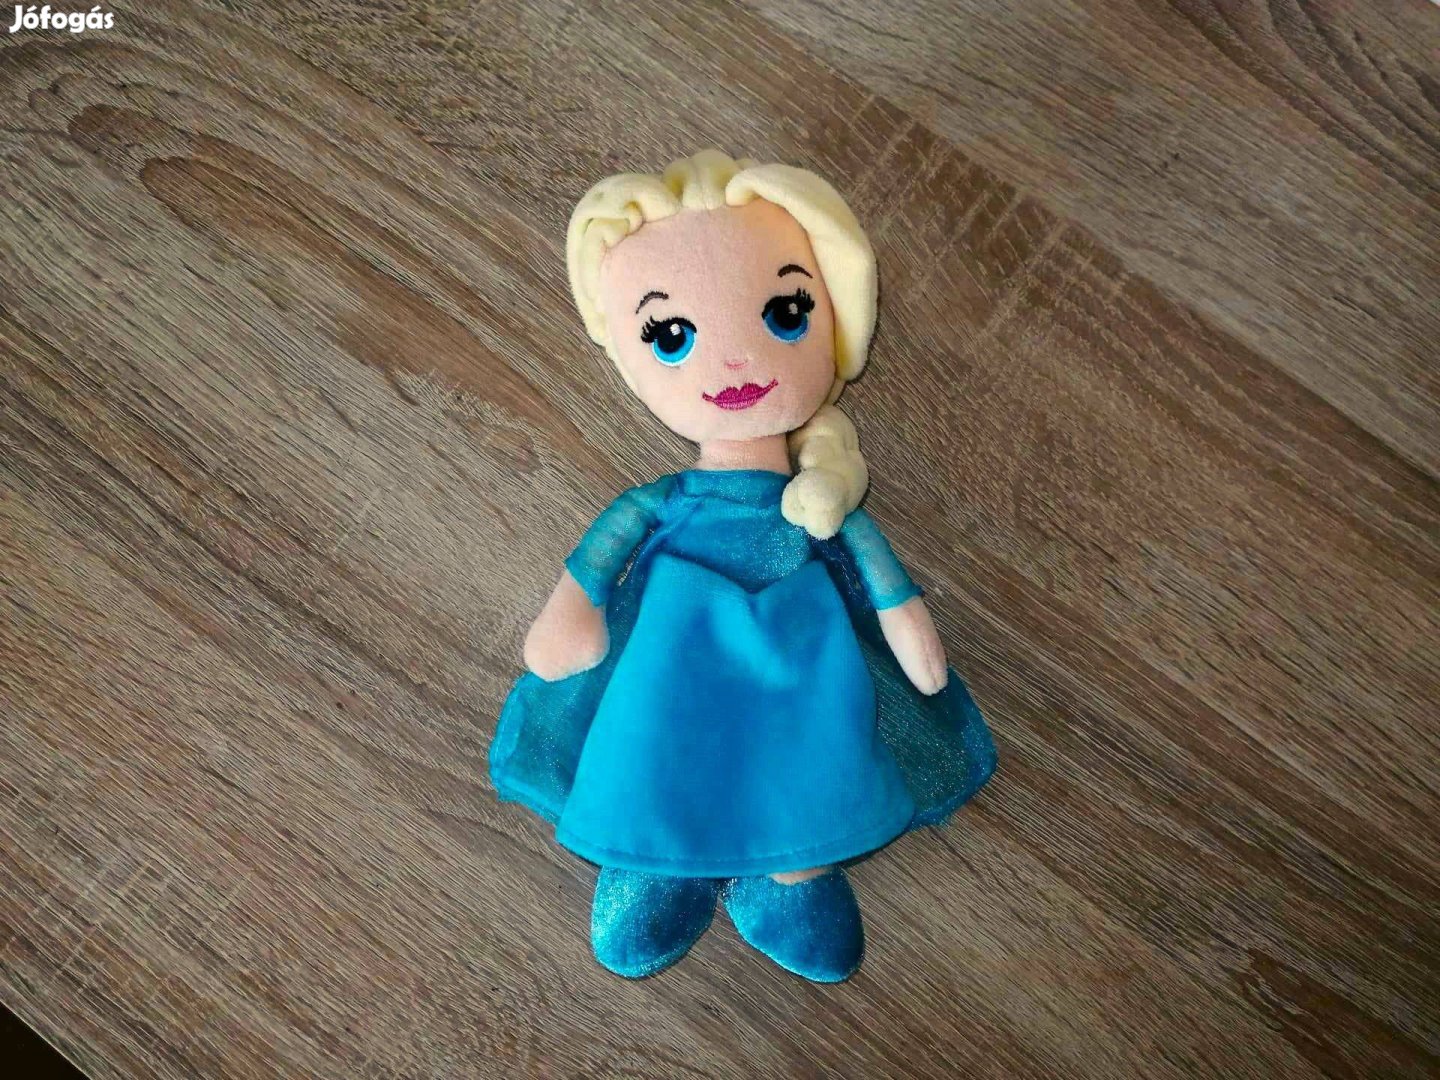 Elza Elsa Jégvarázs Frozen plüss 21 cm